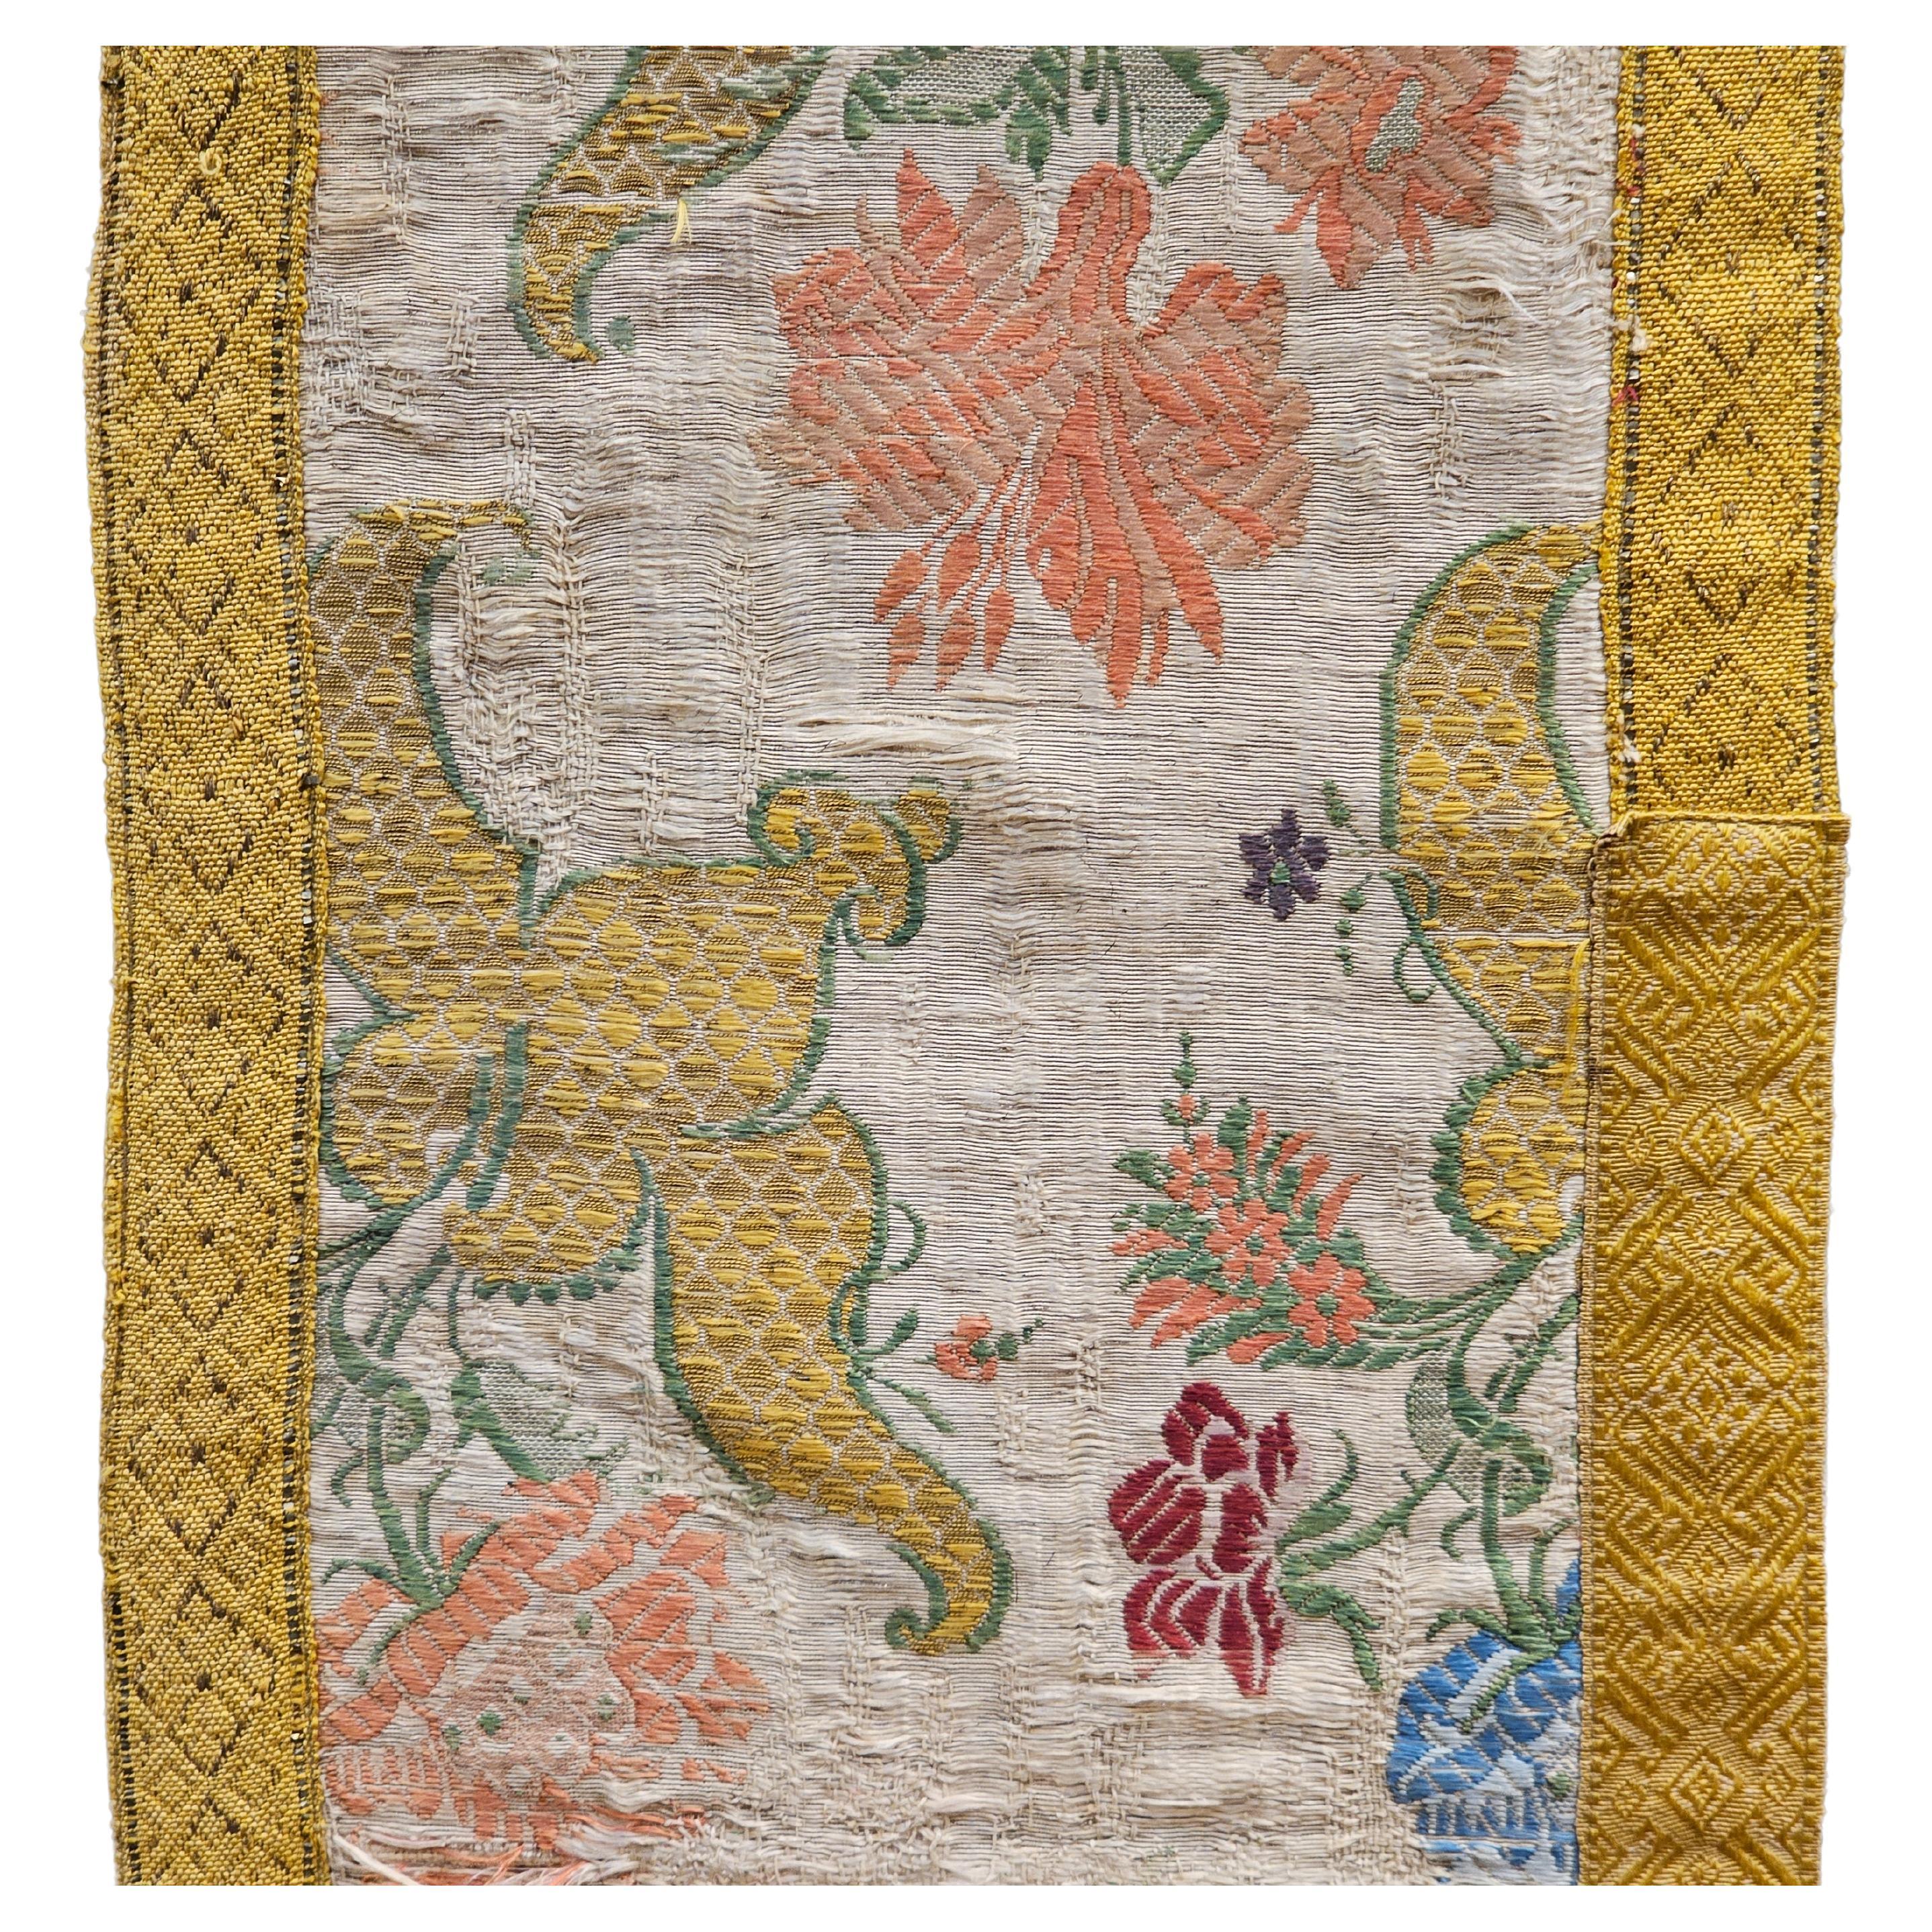 Panneau textile européen du XVIIIe siècle brodé à la main de soie et de fils dorés